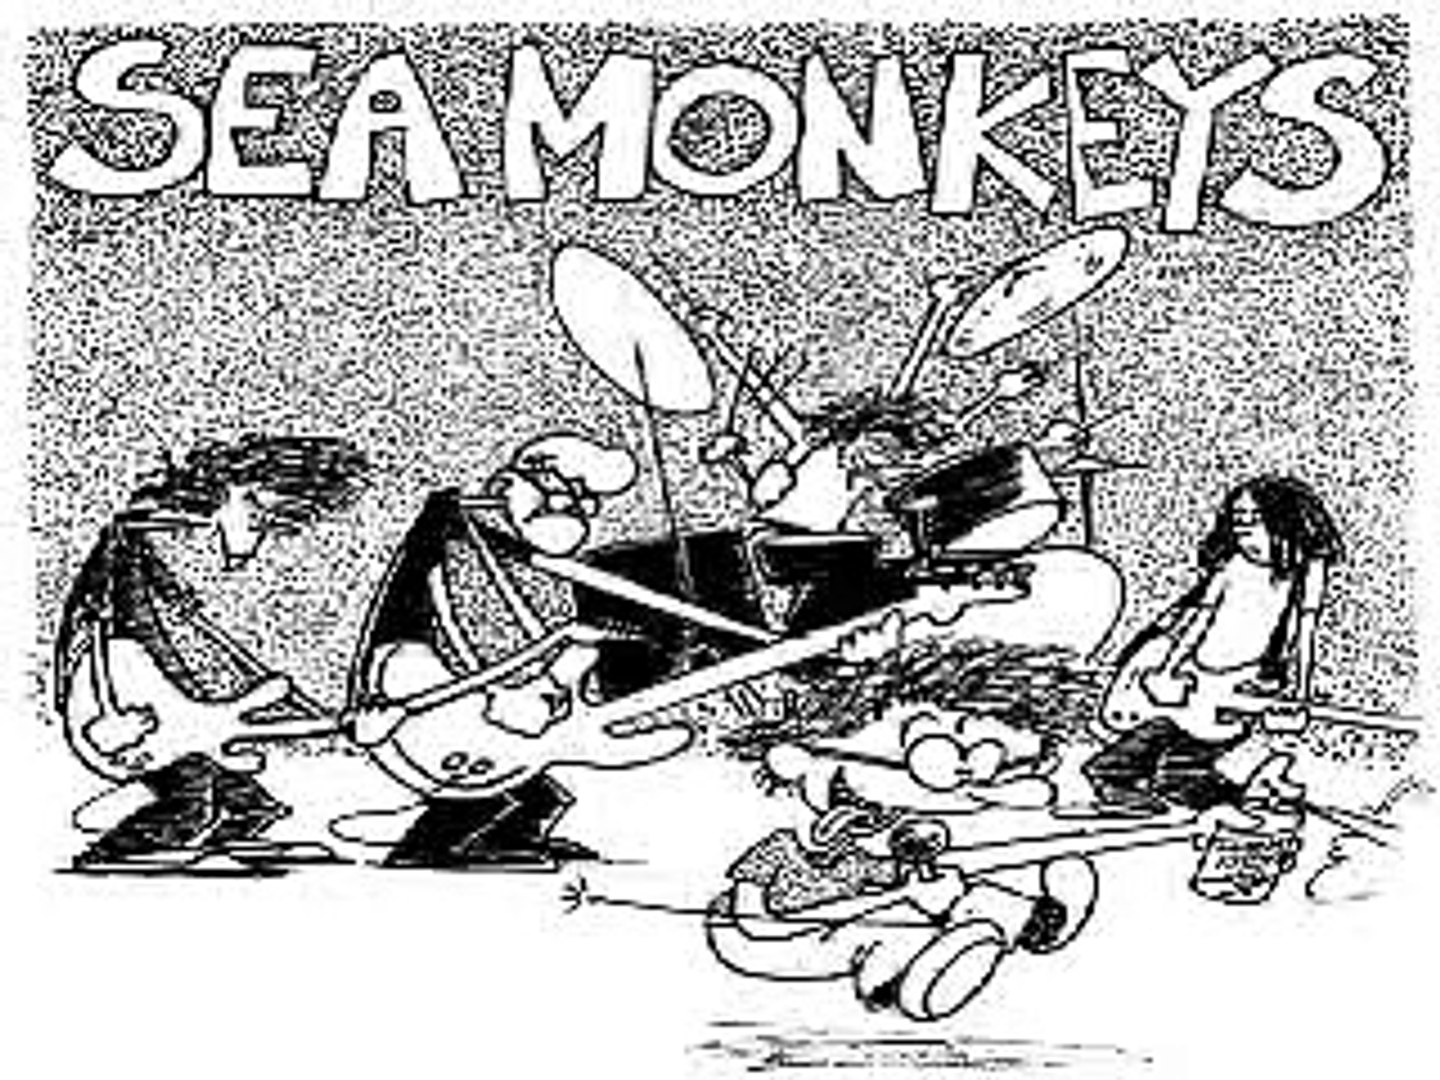 sea monkeys - sea monkey theme song ep